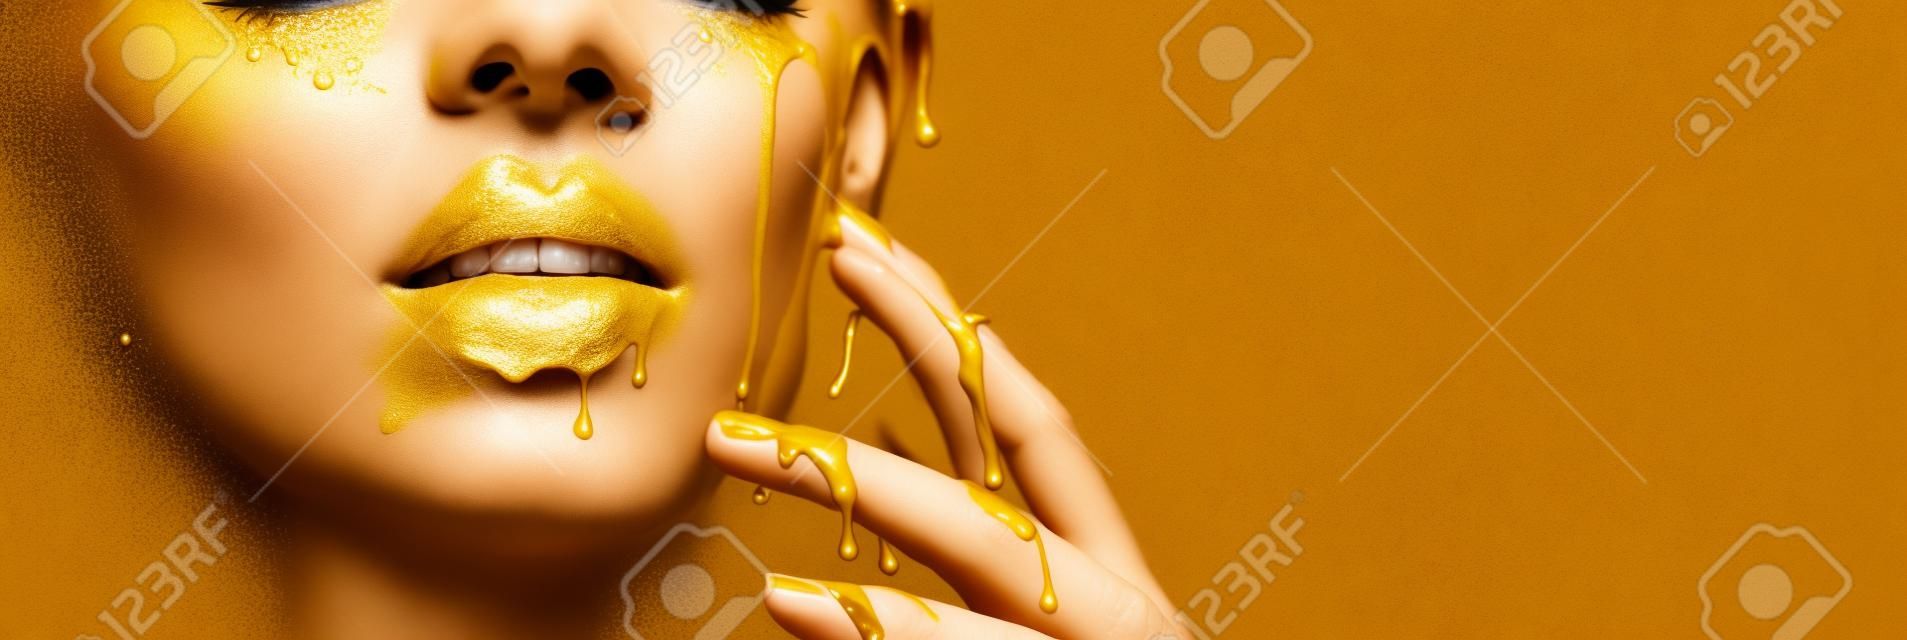 Gouden verf vlekken druppelt uit het gezicht lippen en hand, gouden vloeistof druppels op mooie model meisje mond, creatieve abstracte make-up.